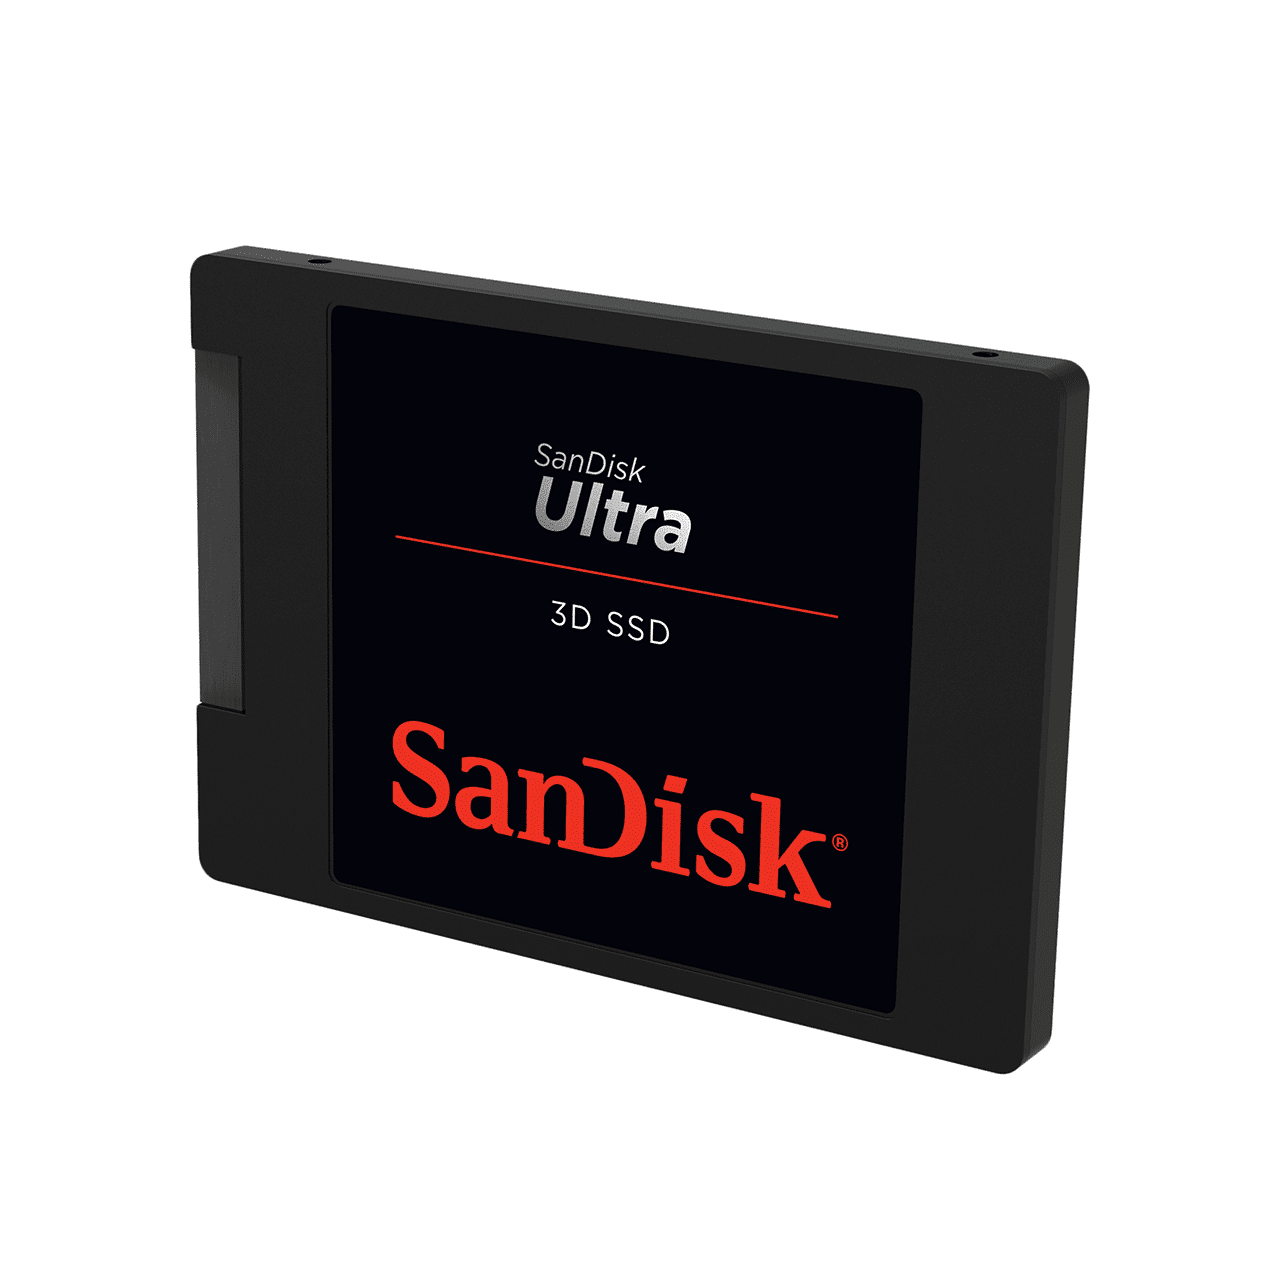 SanDisk SSD Portatile SanDisk Ultra 3D 250GB